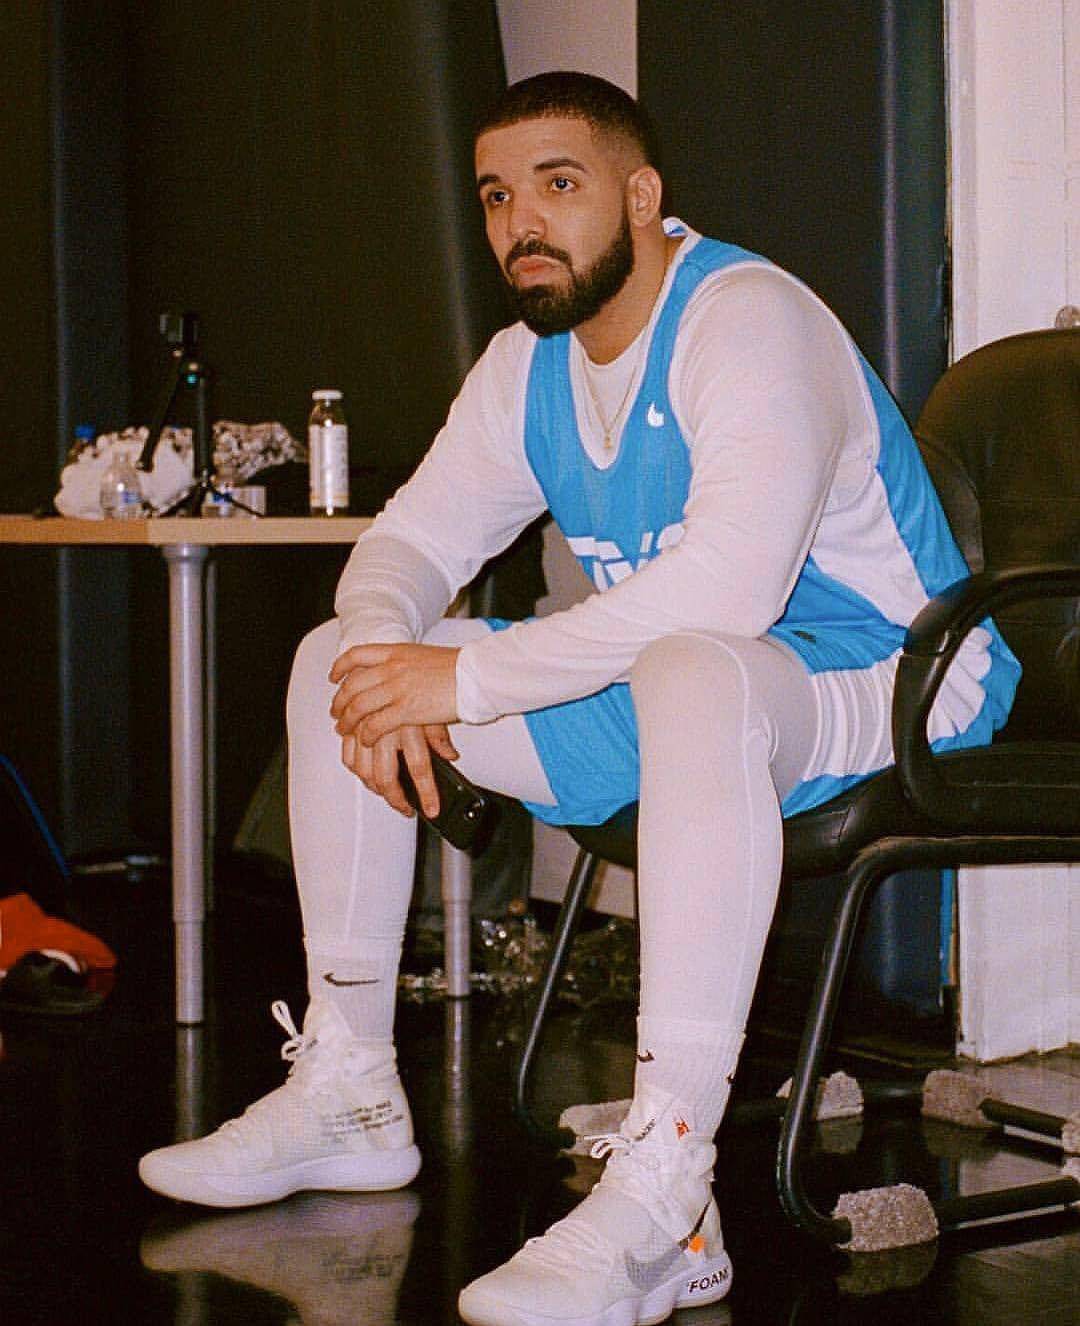 Drake želi istetovirati lik Celine Dion: 'Nemoj, zvat ću ti mamu'